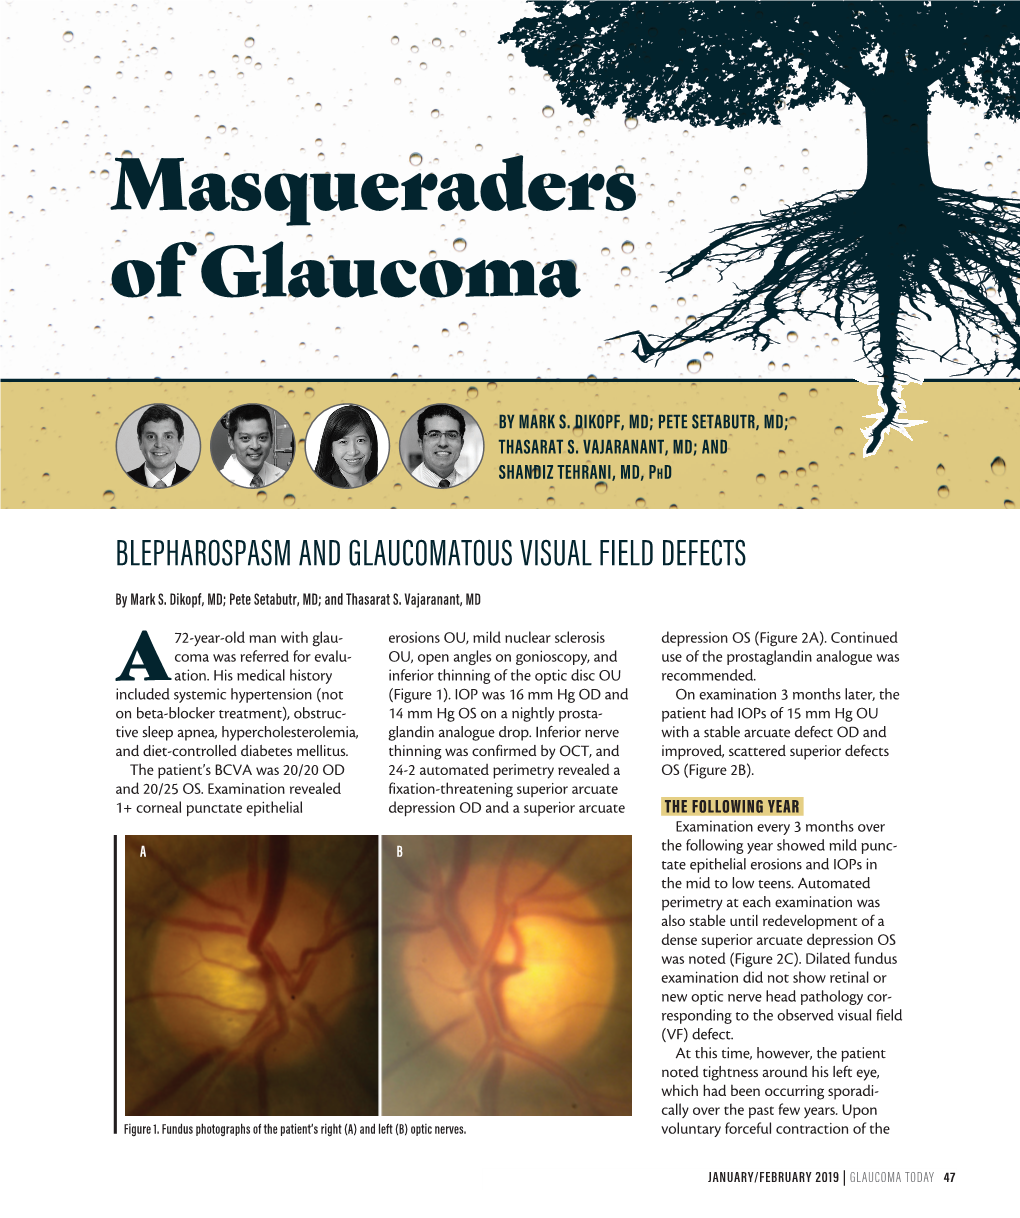 Masqueraders of Glaucoma